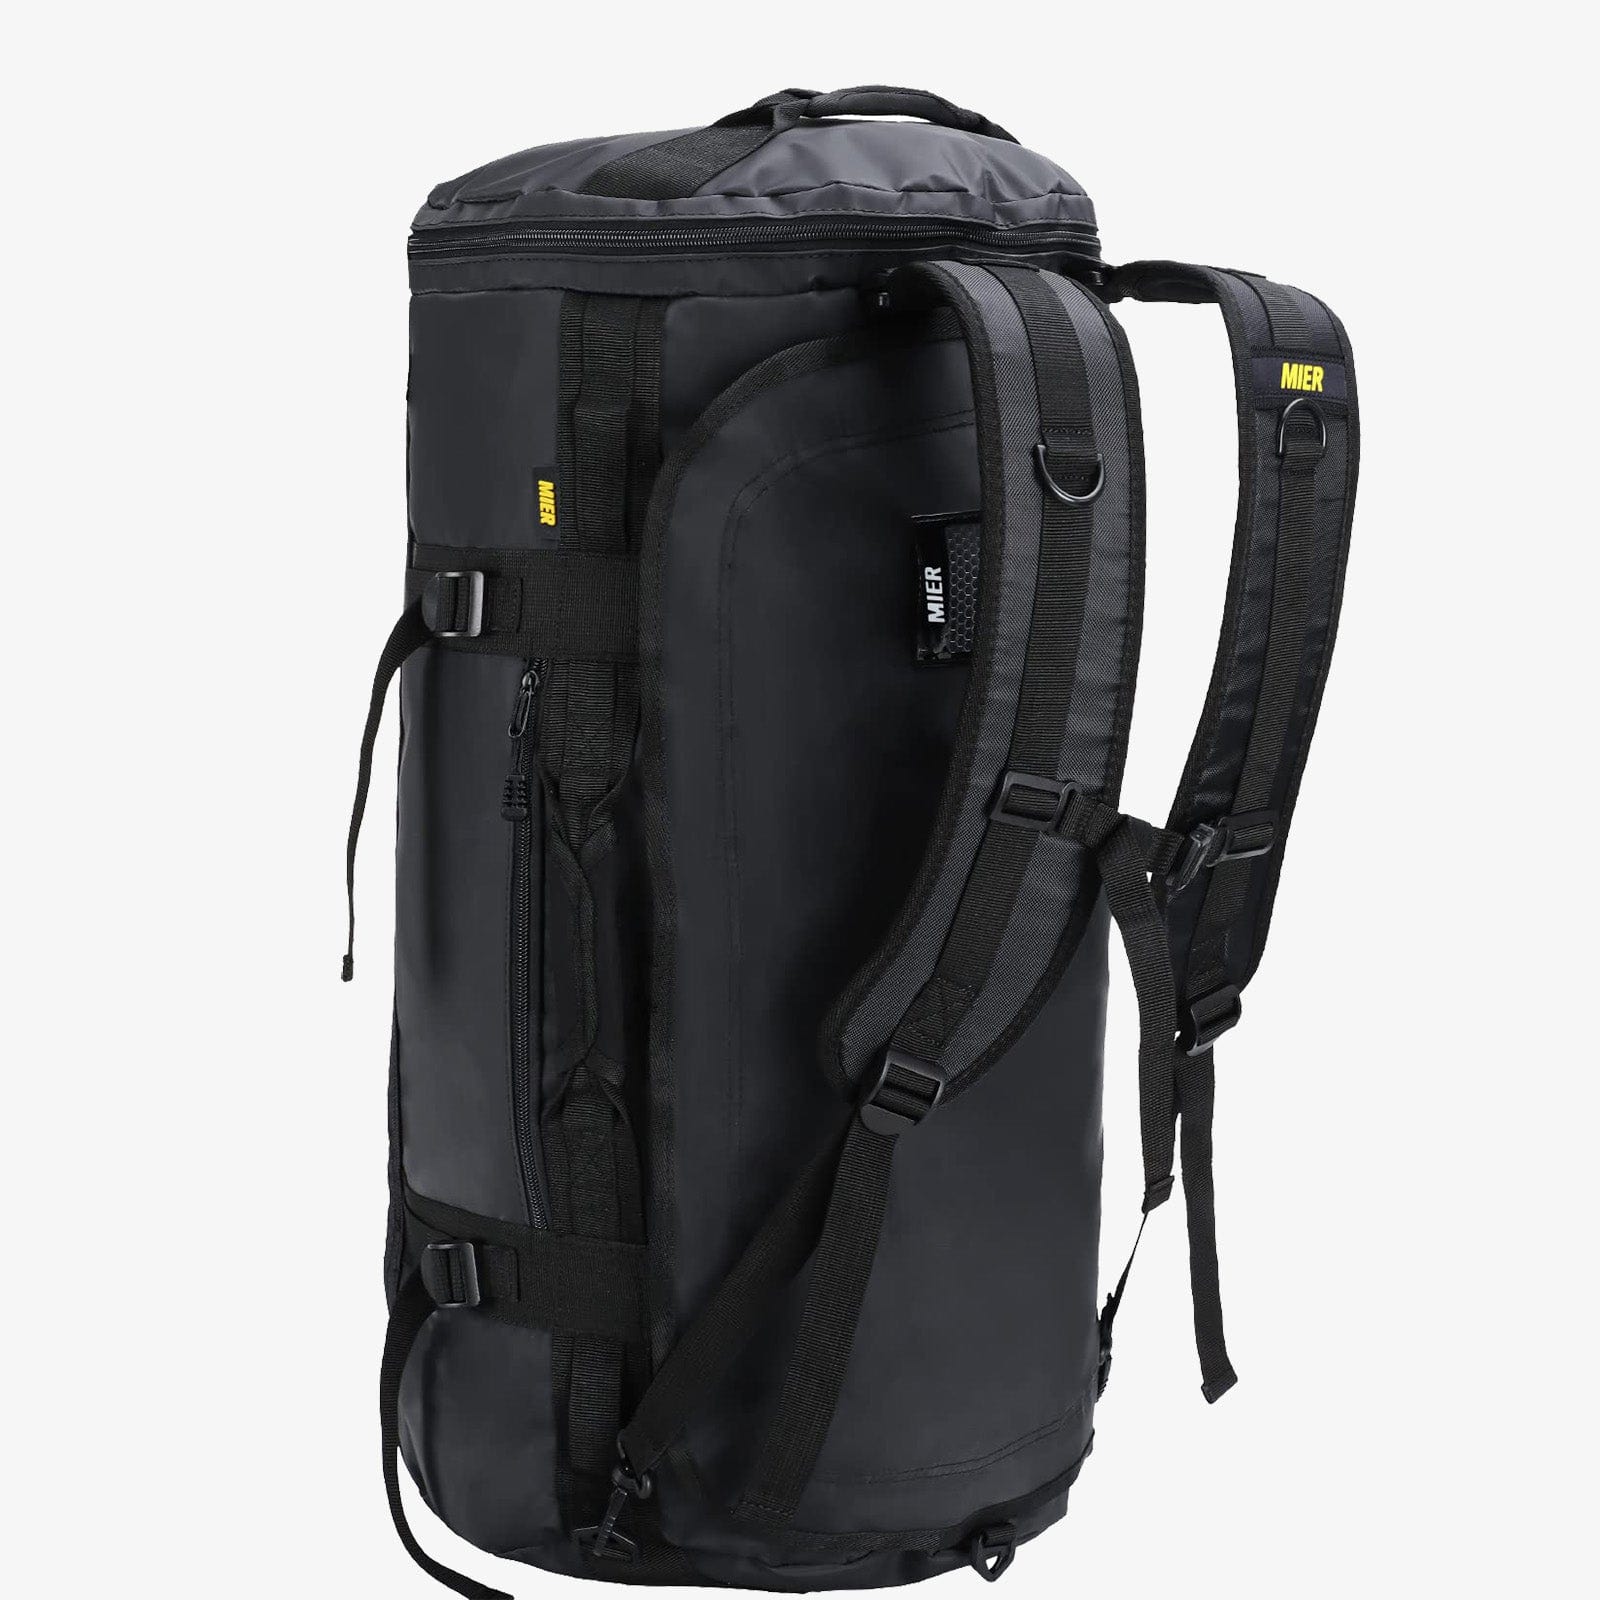 Backpack Duffle Bag